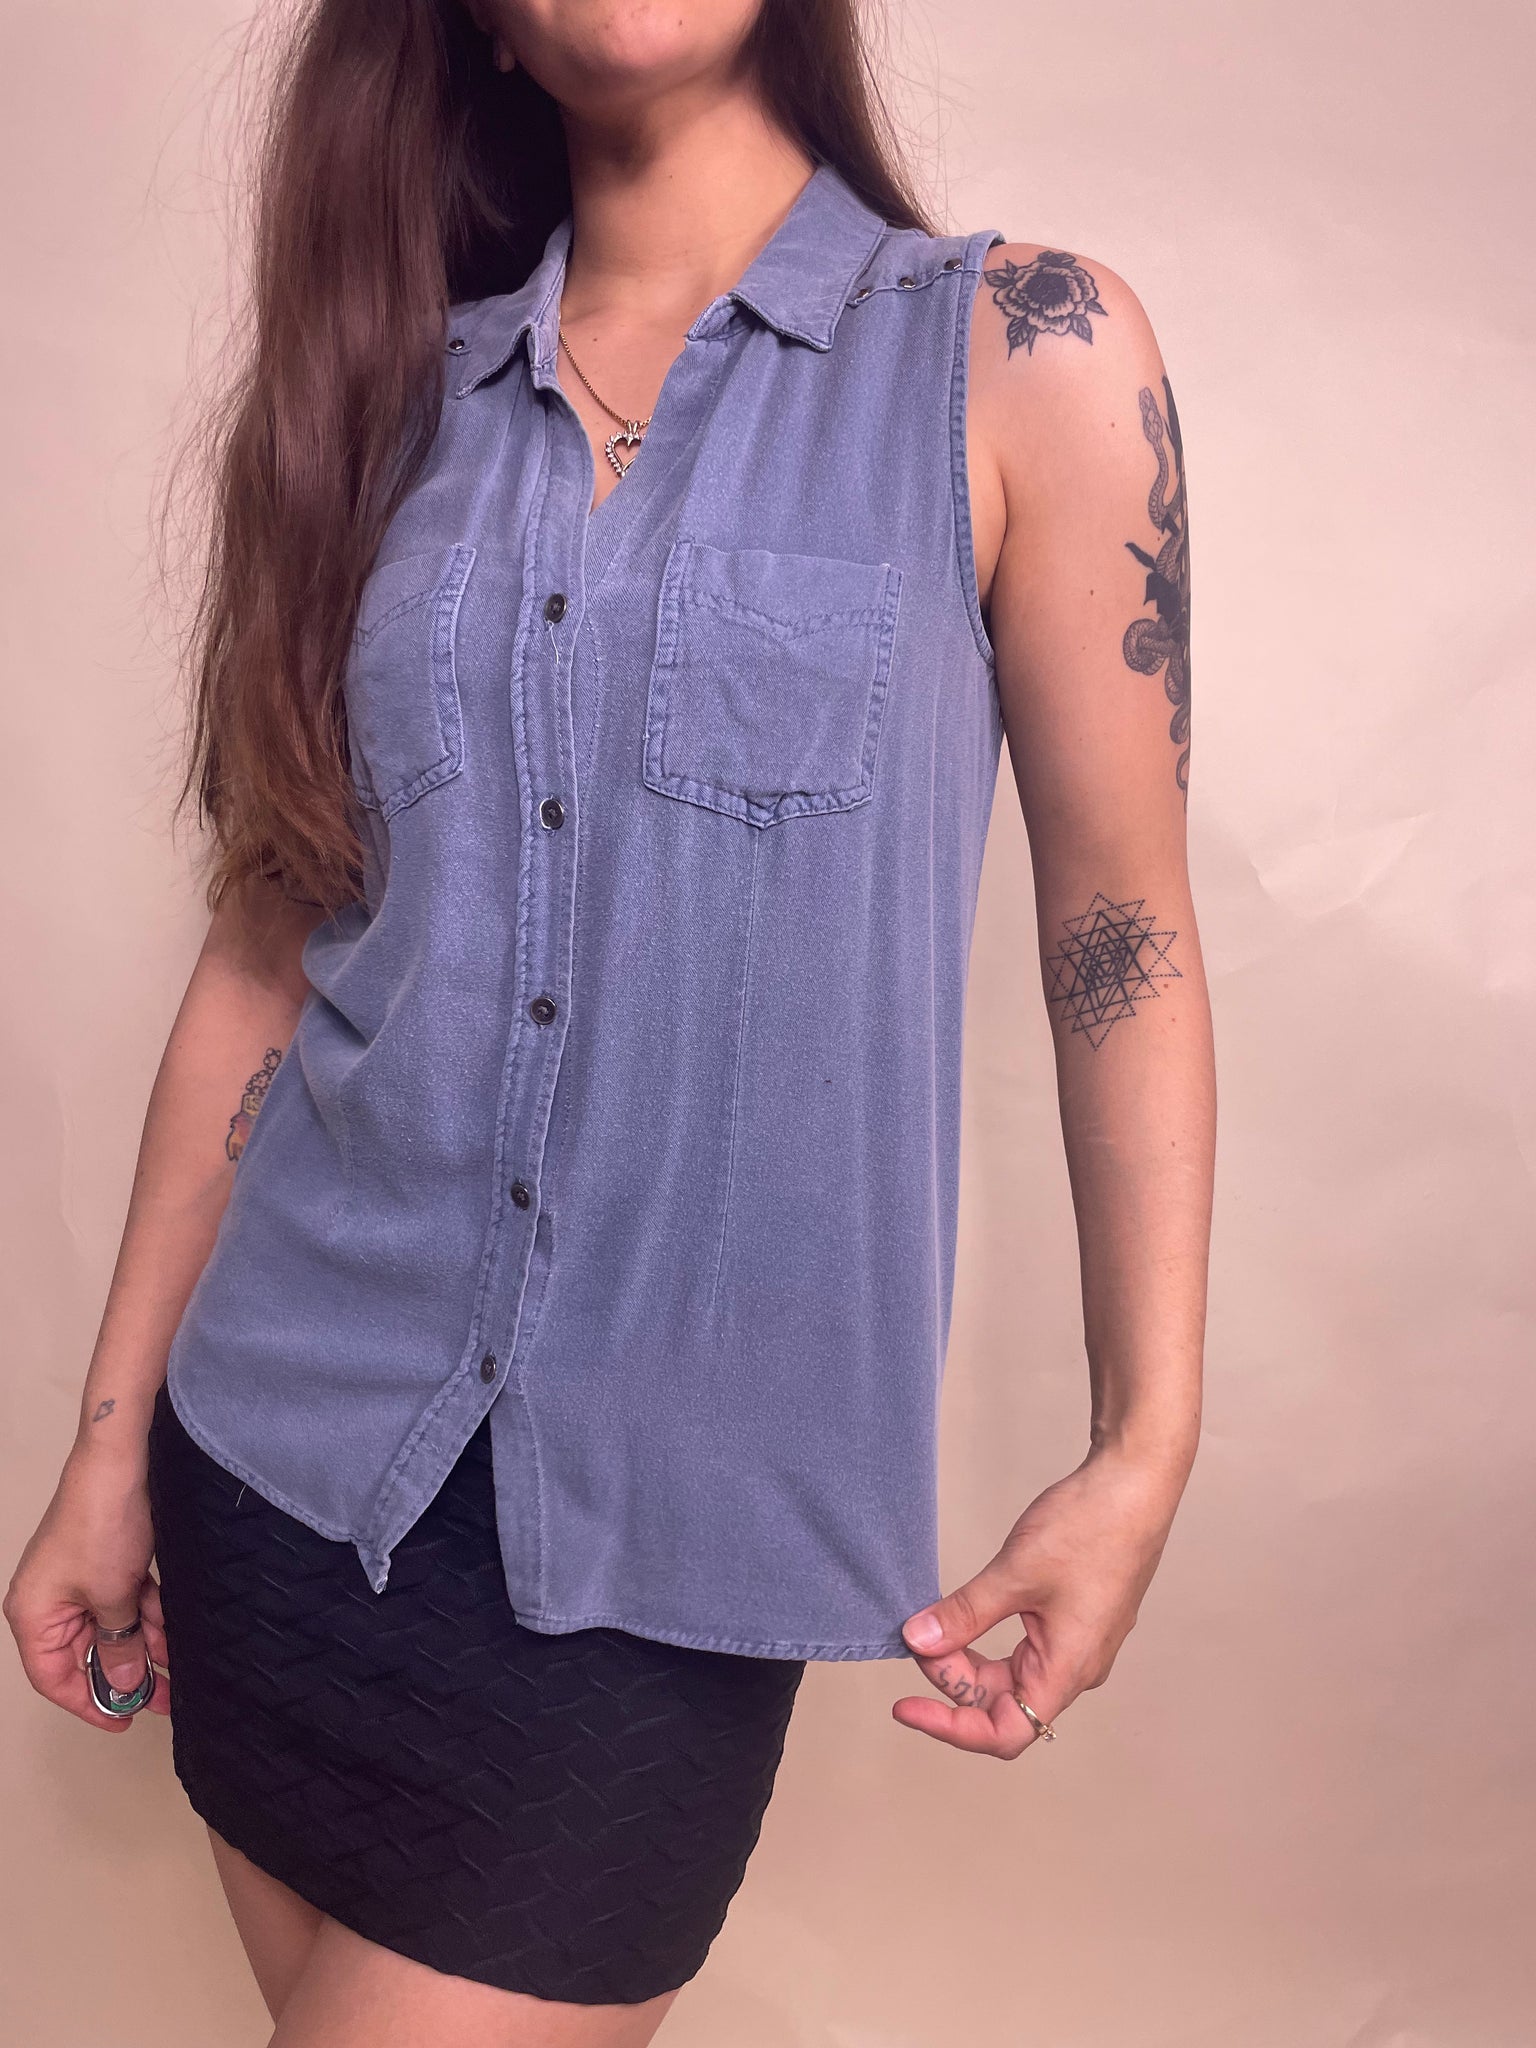 Studded sleeveless blouse, Size S